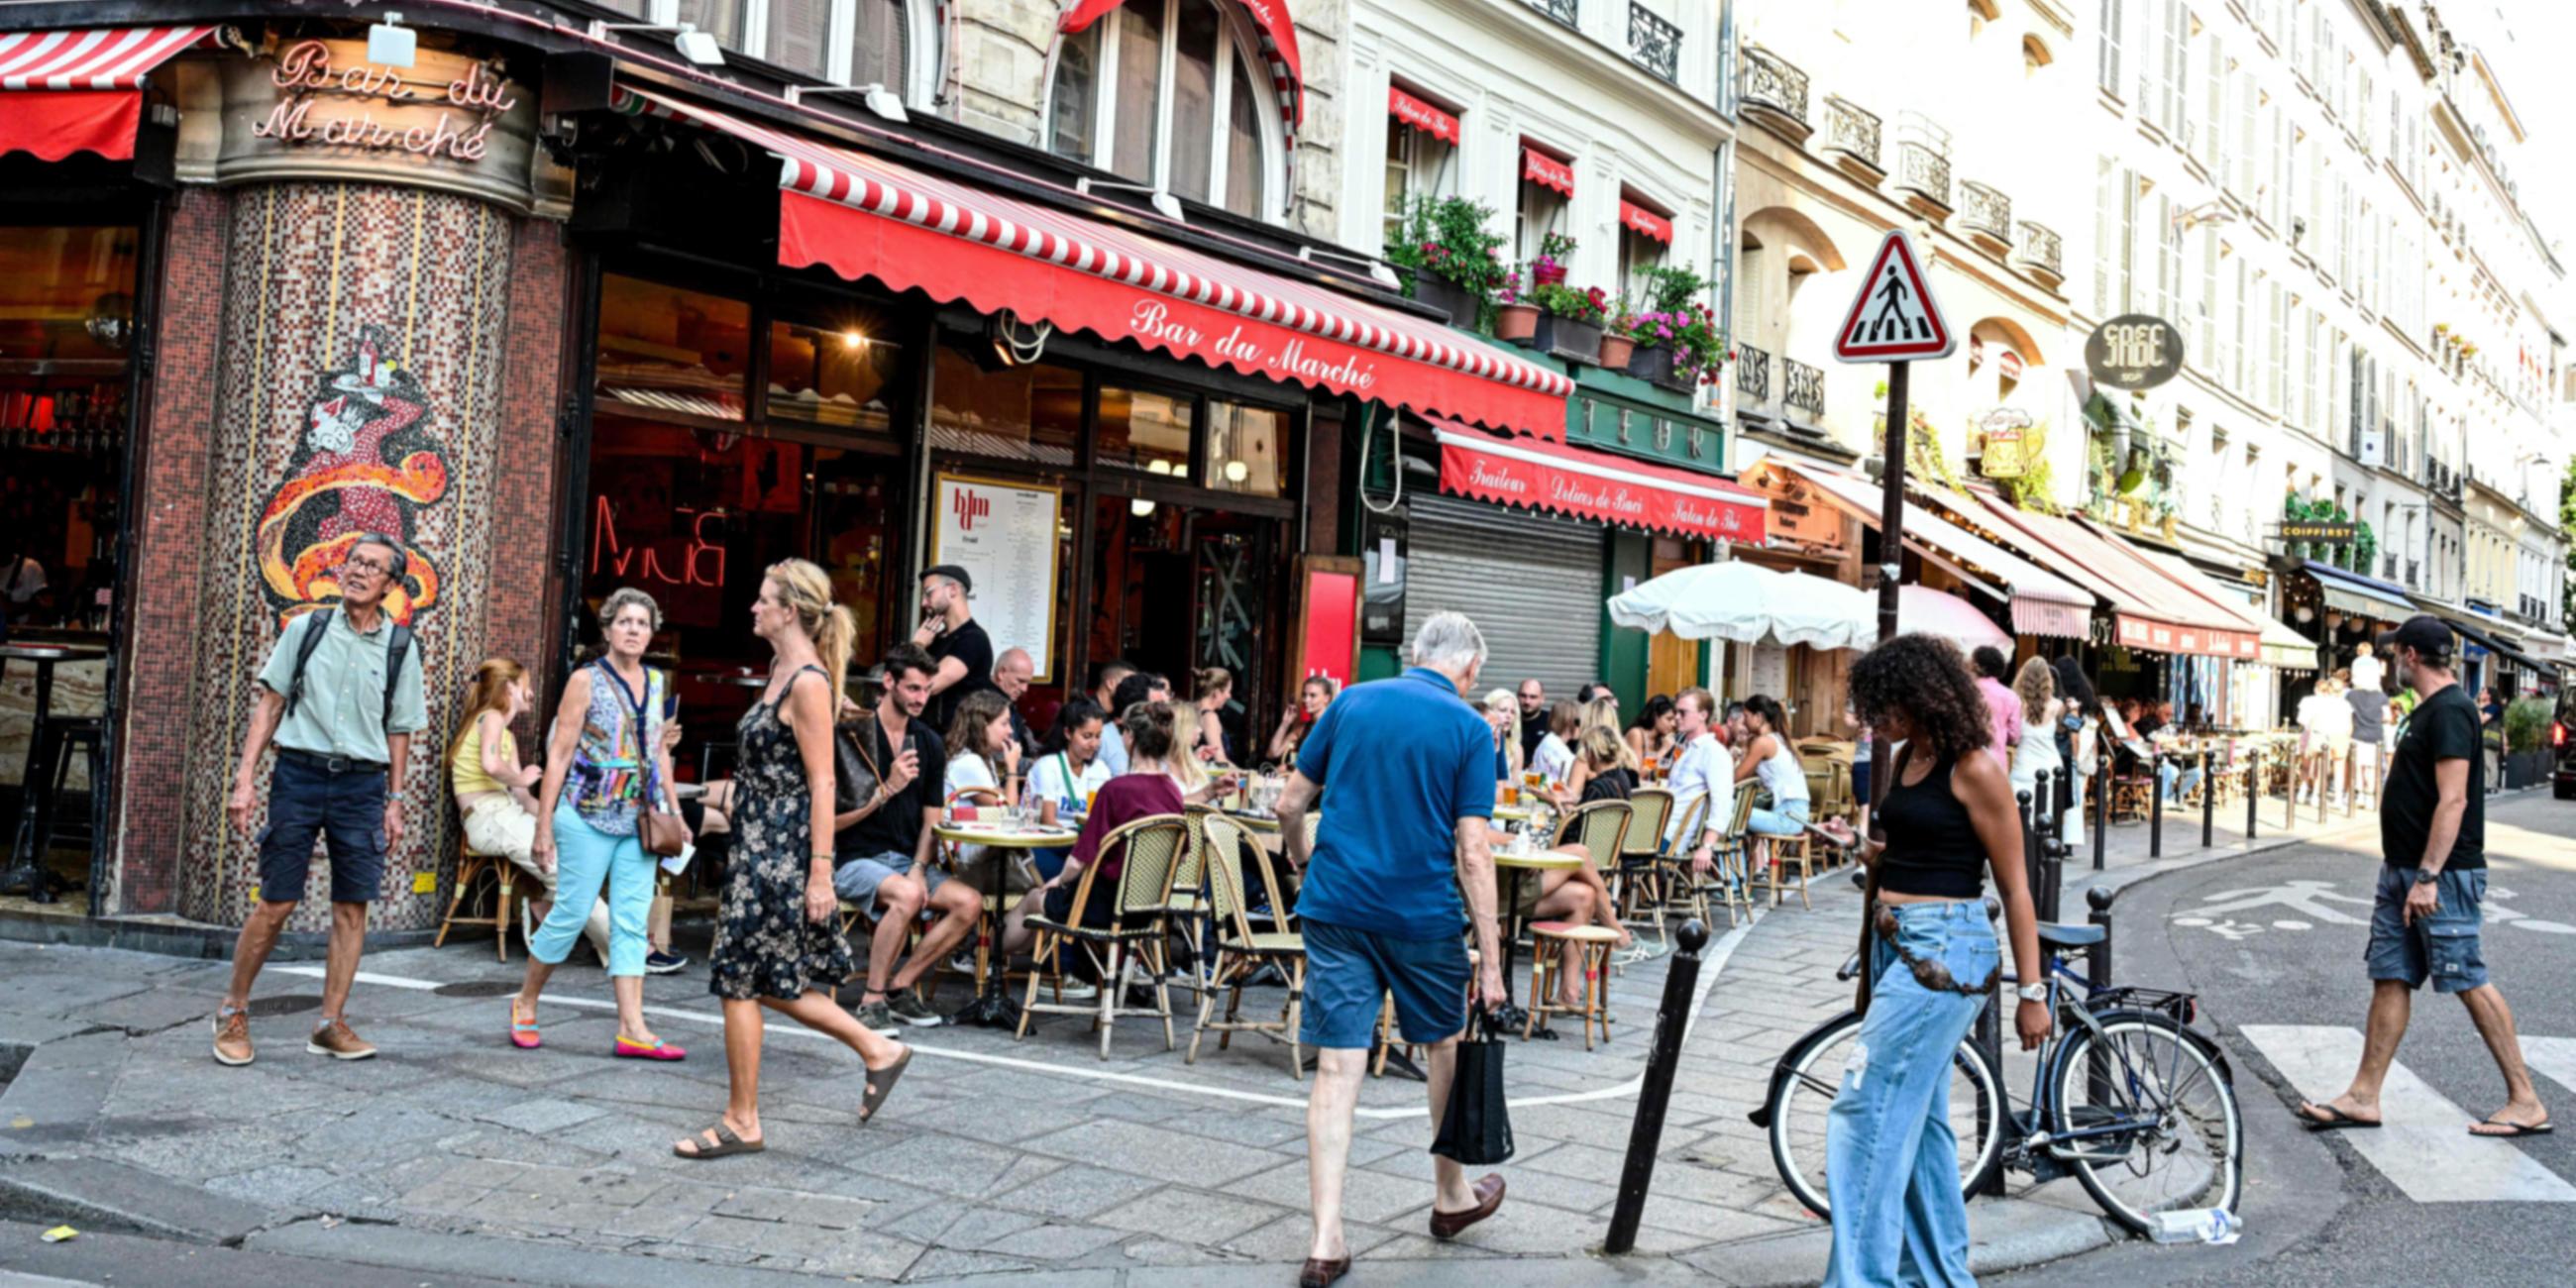 Terrassen vor Bars gehören in Paris zum Stadtbild.